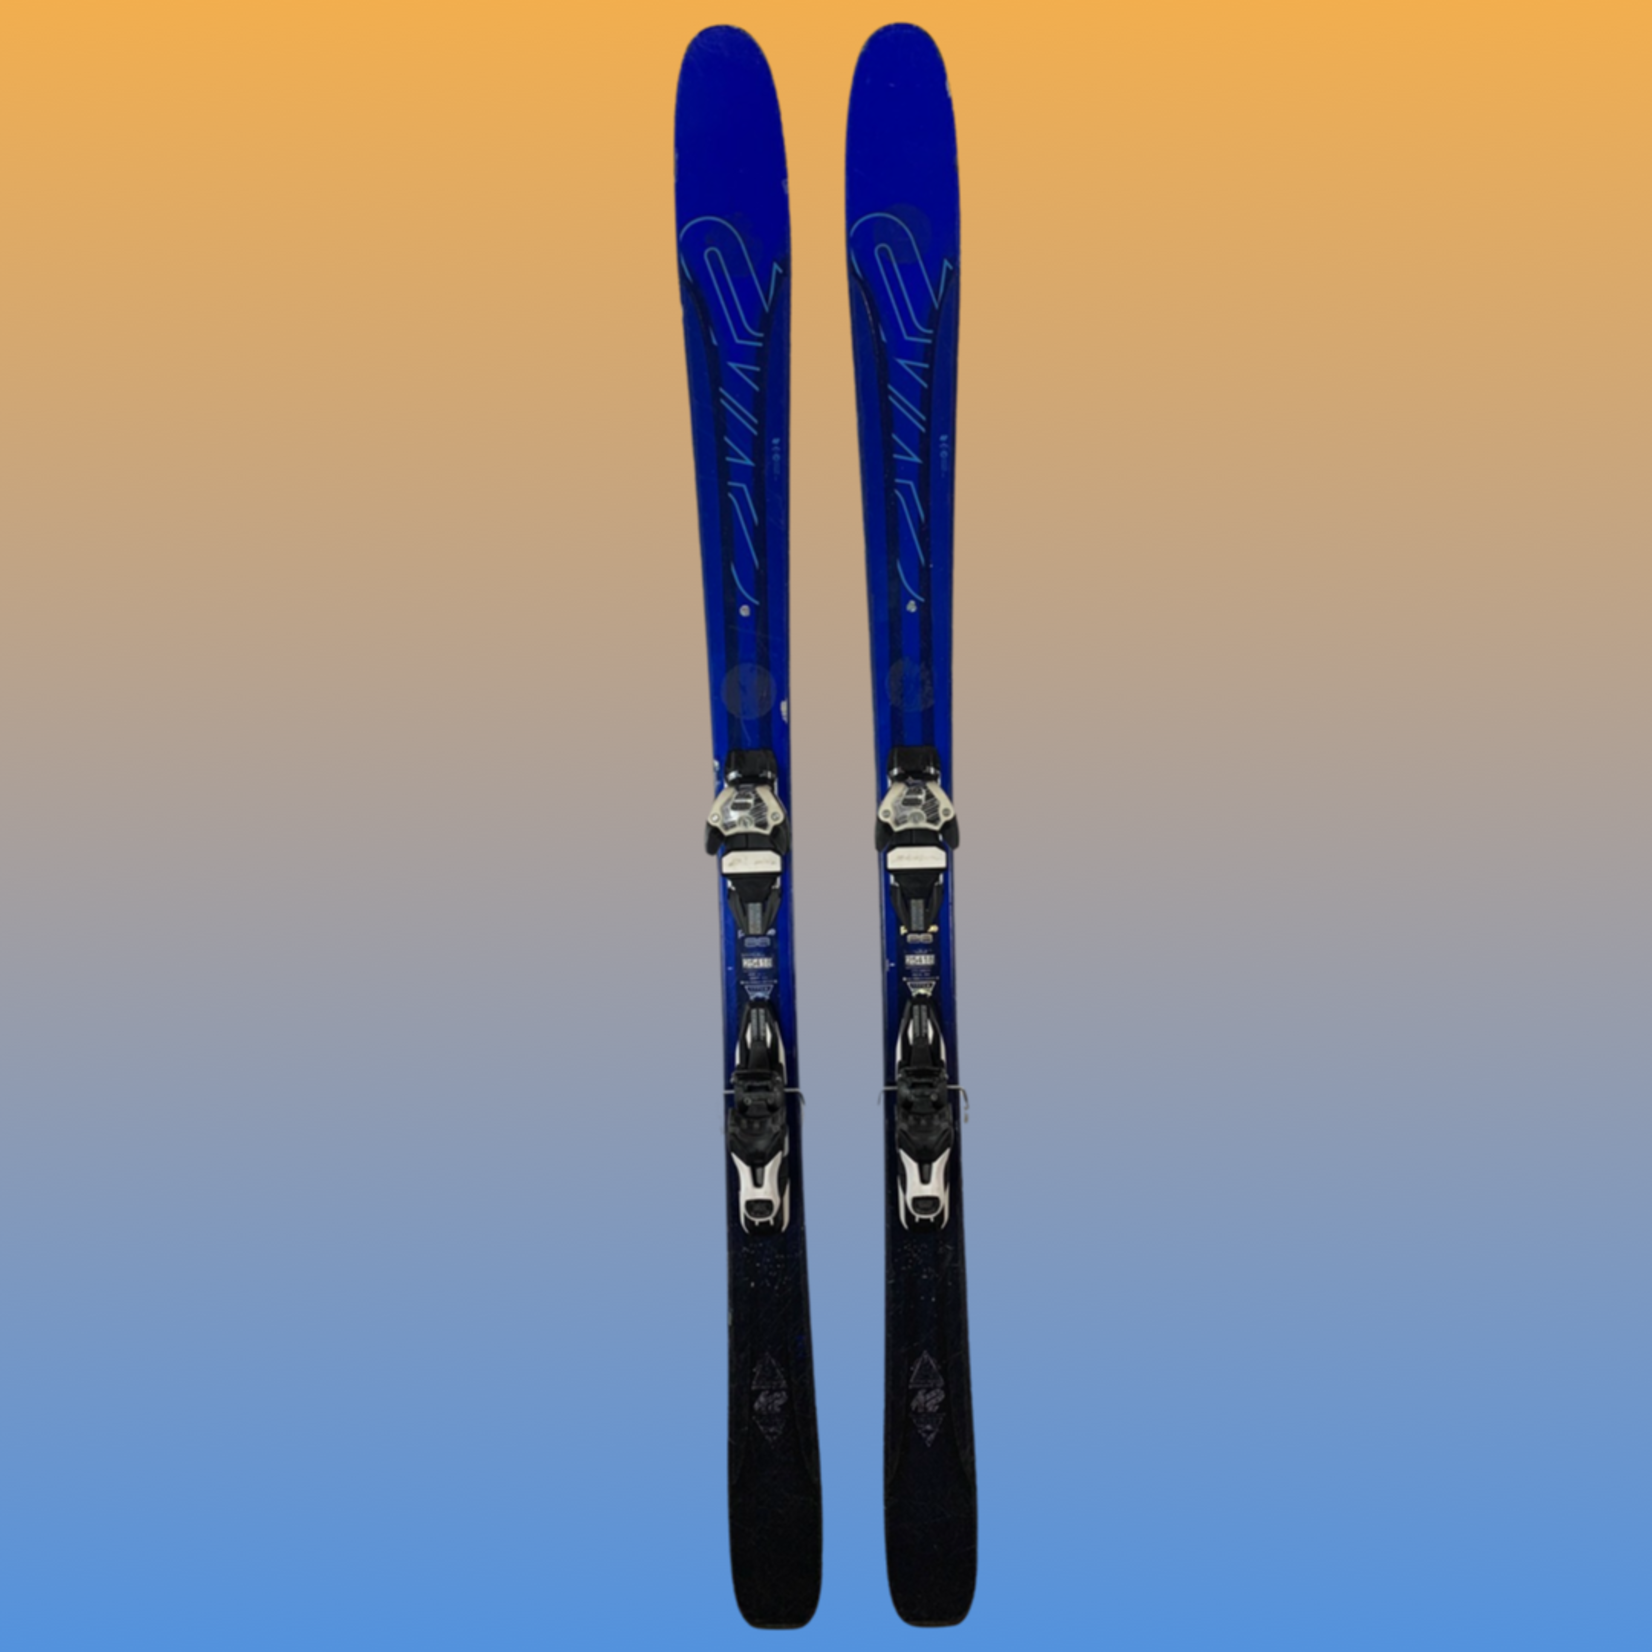 K2 K2 Pinnacle 88 Skis + Marker Squire Demo Bindings, Size 177cm